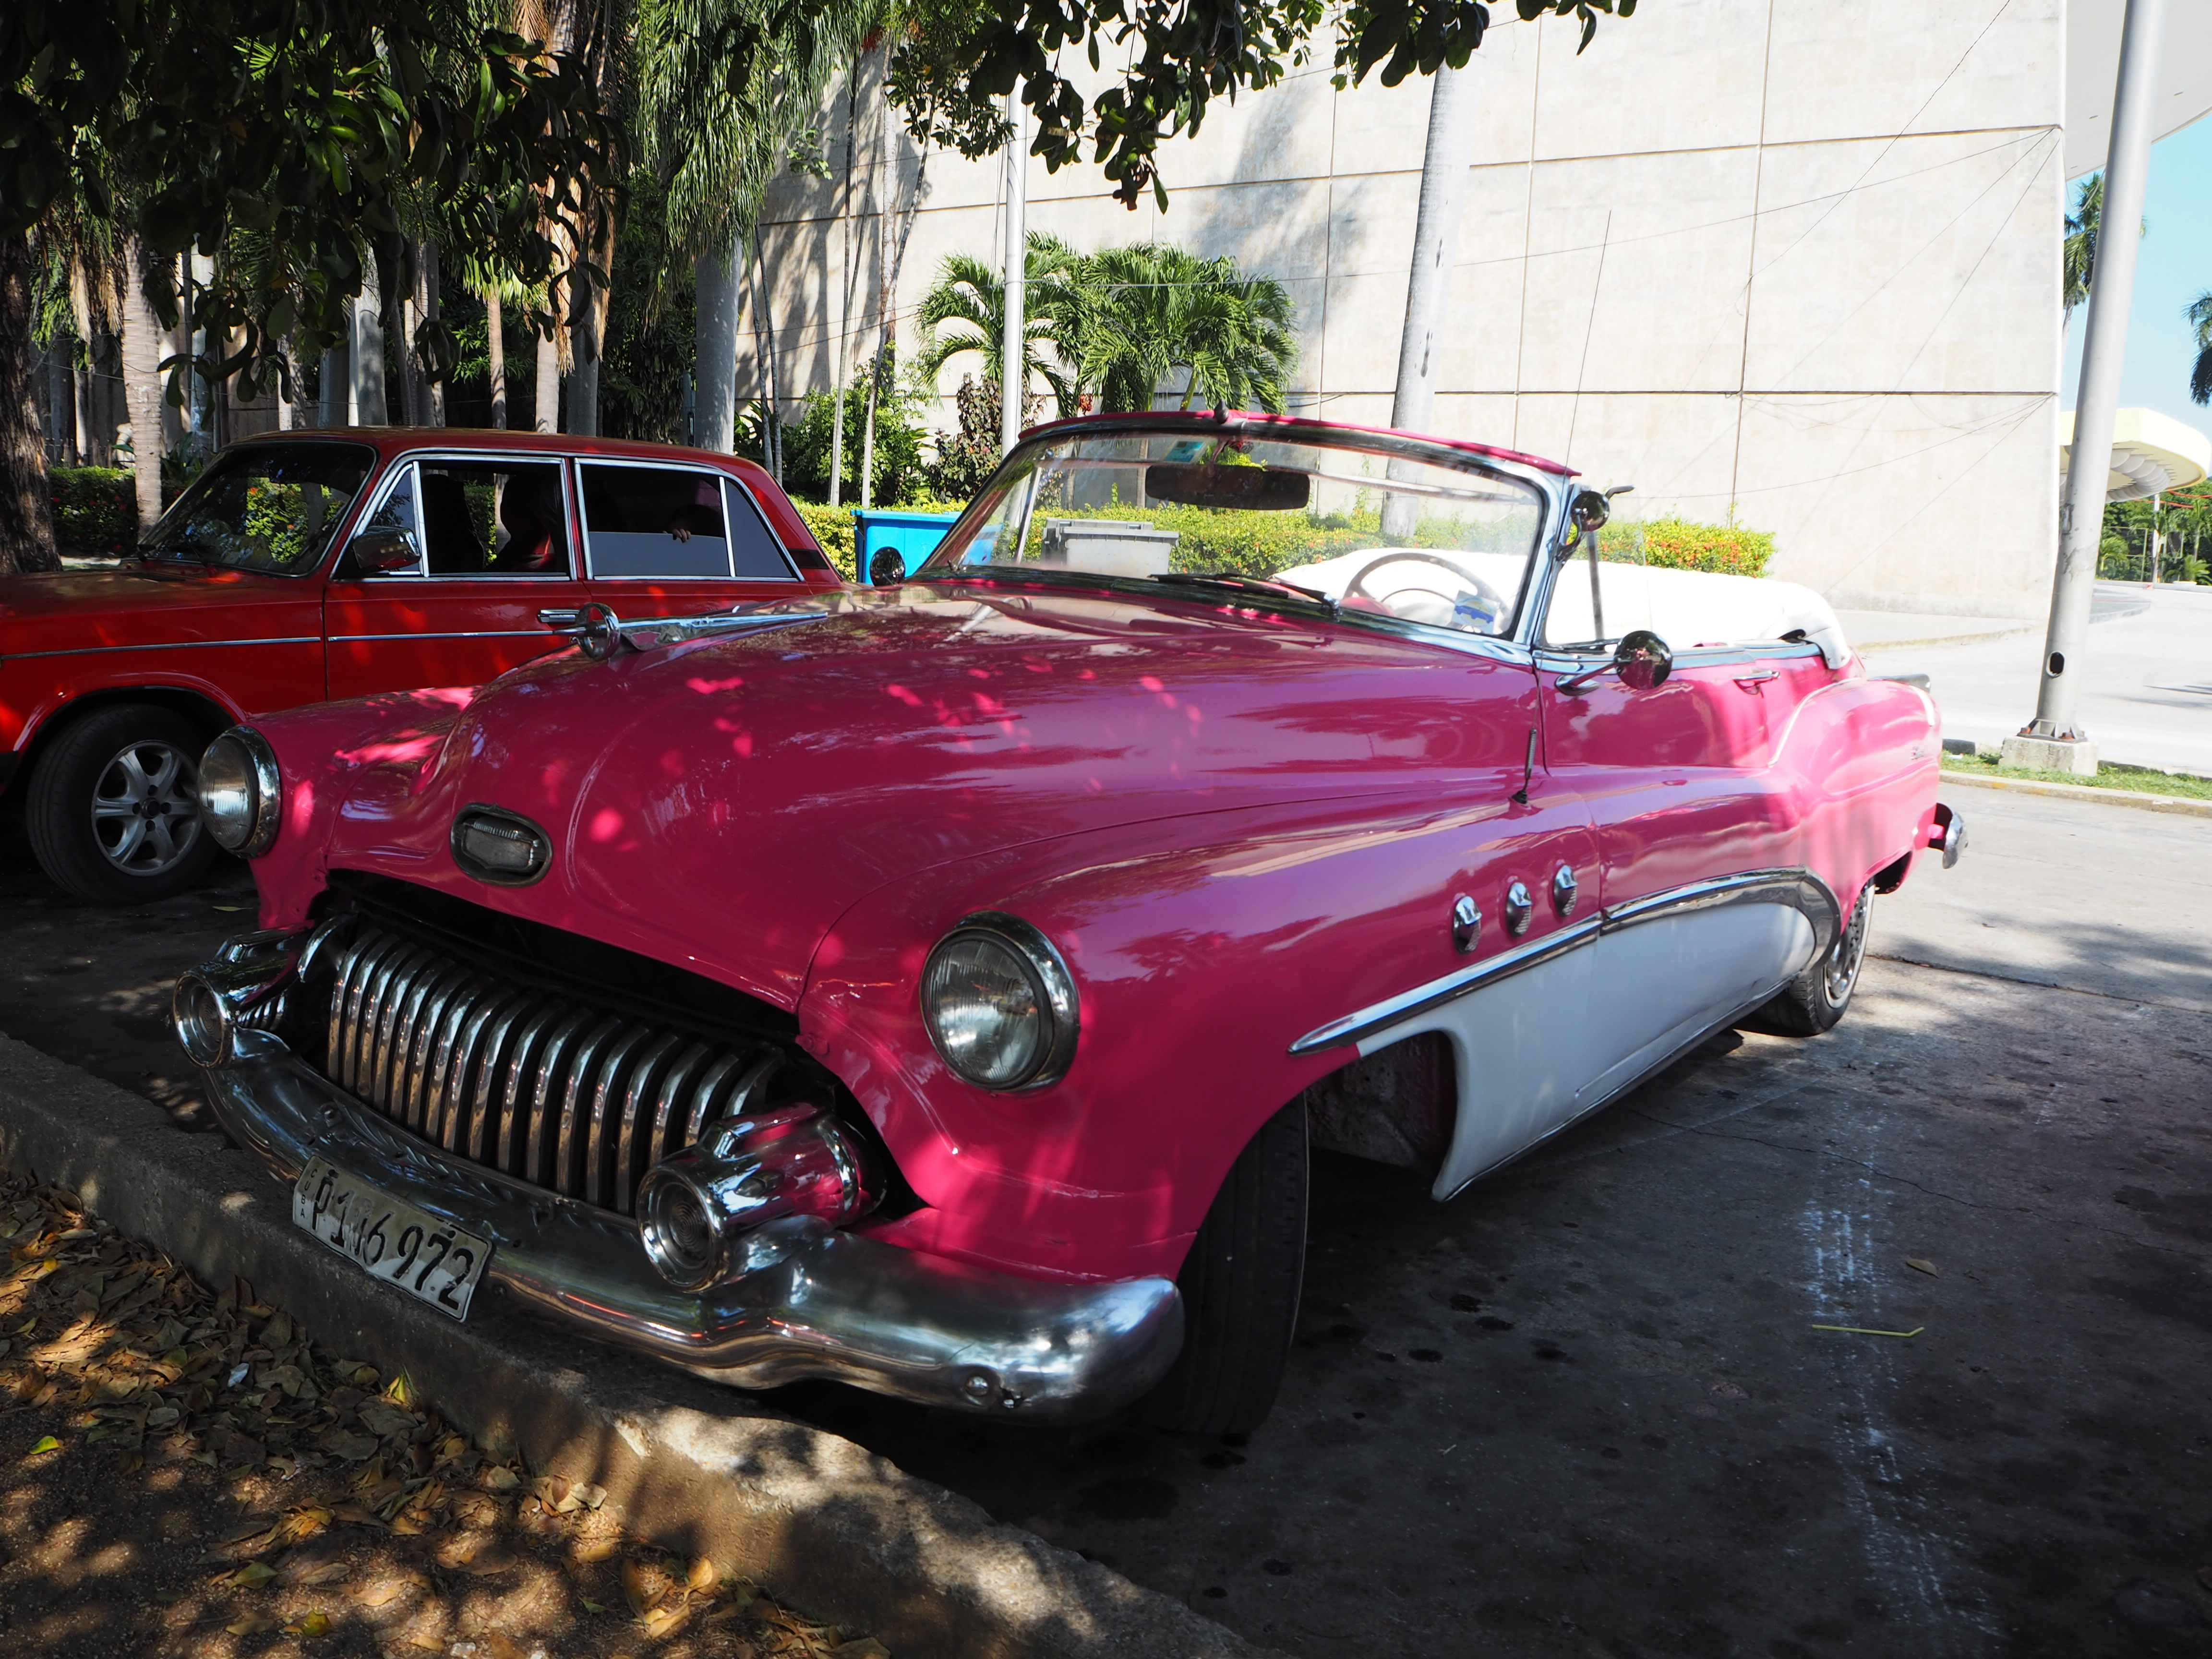 キューバを象徴するクラシックカー はじめてのキューバ旅行ガイド 公式